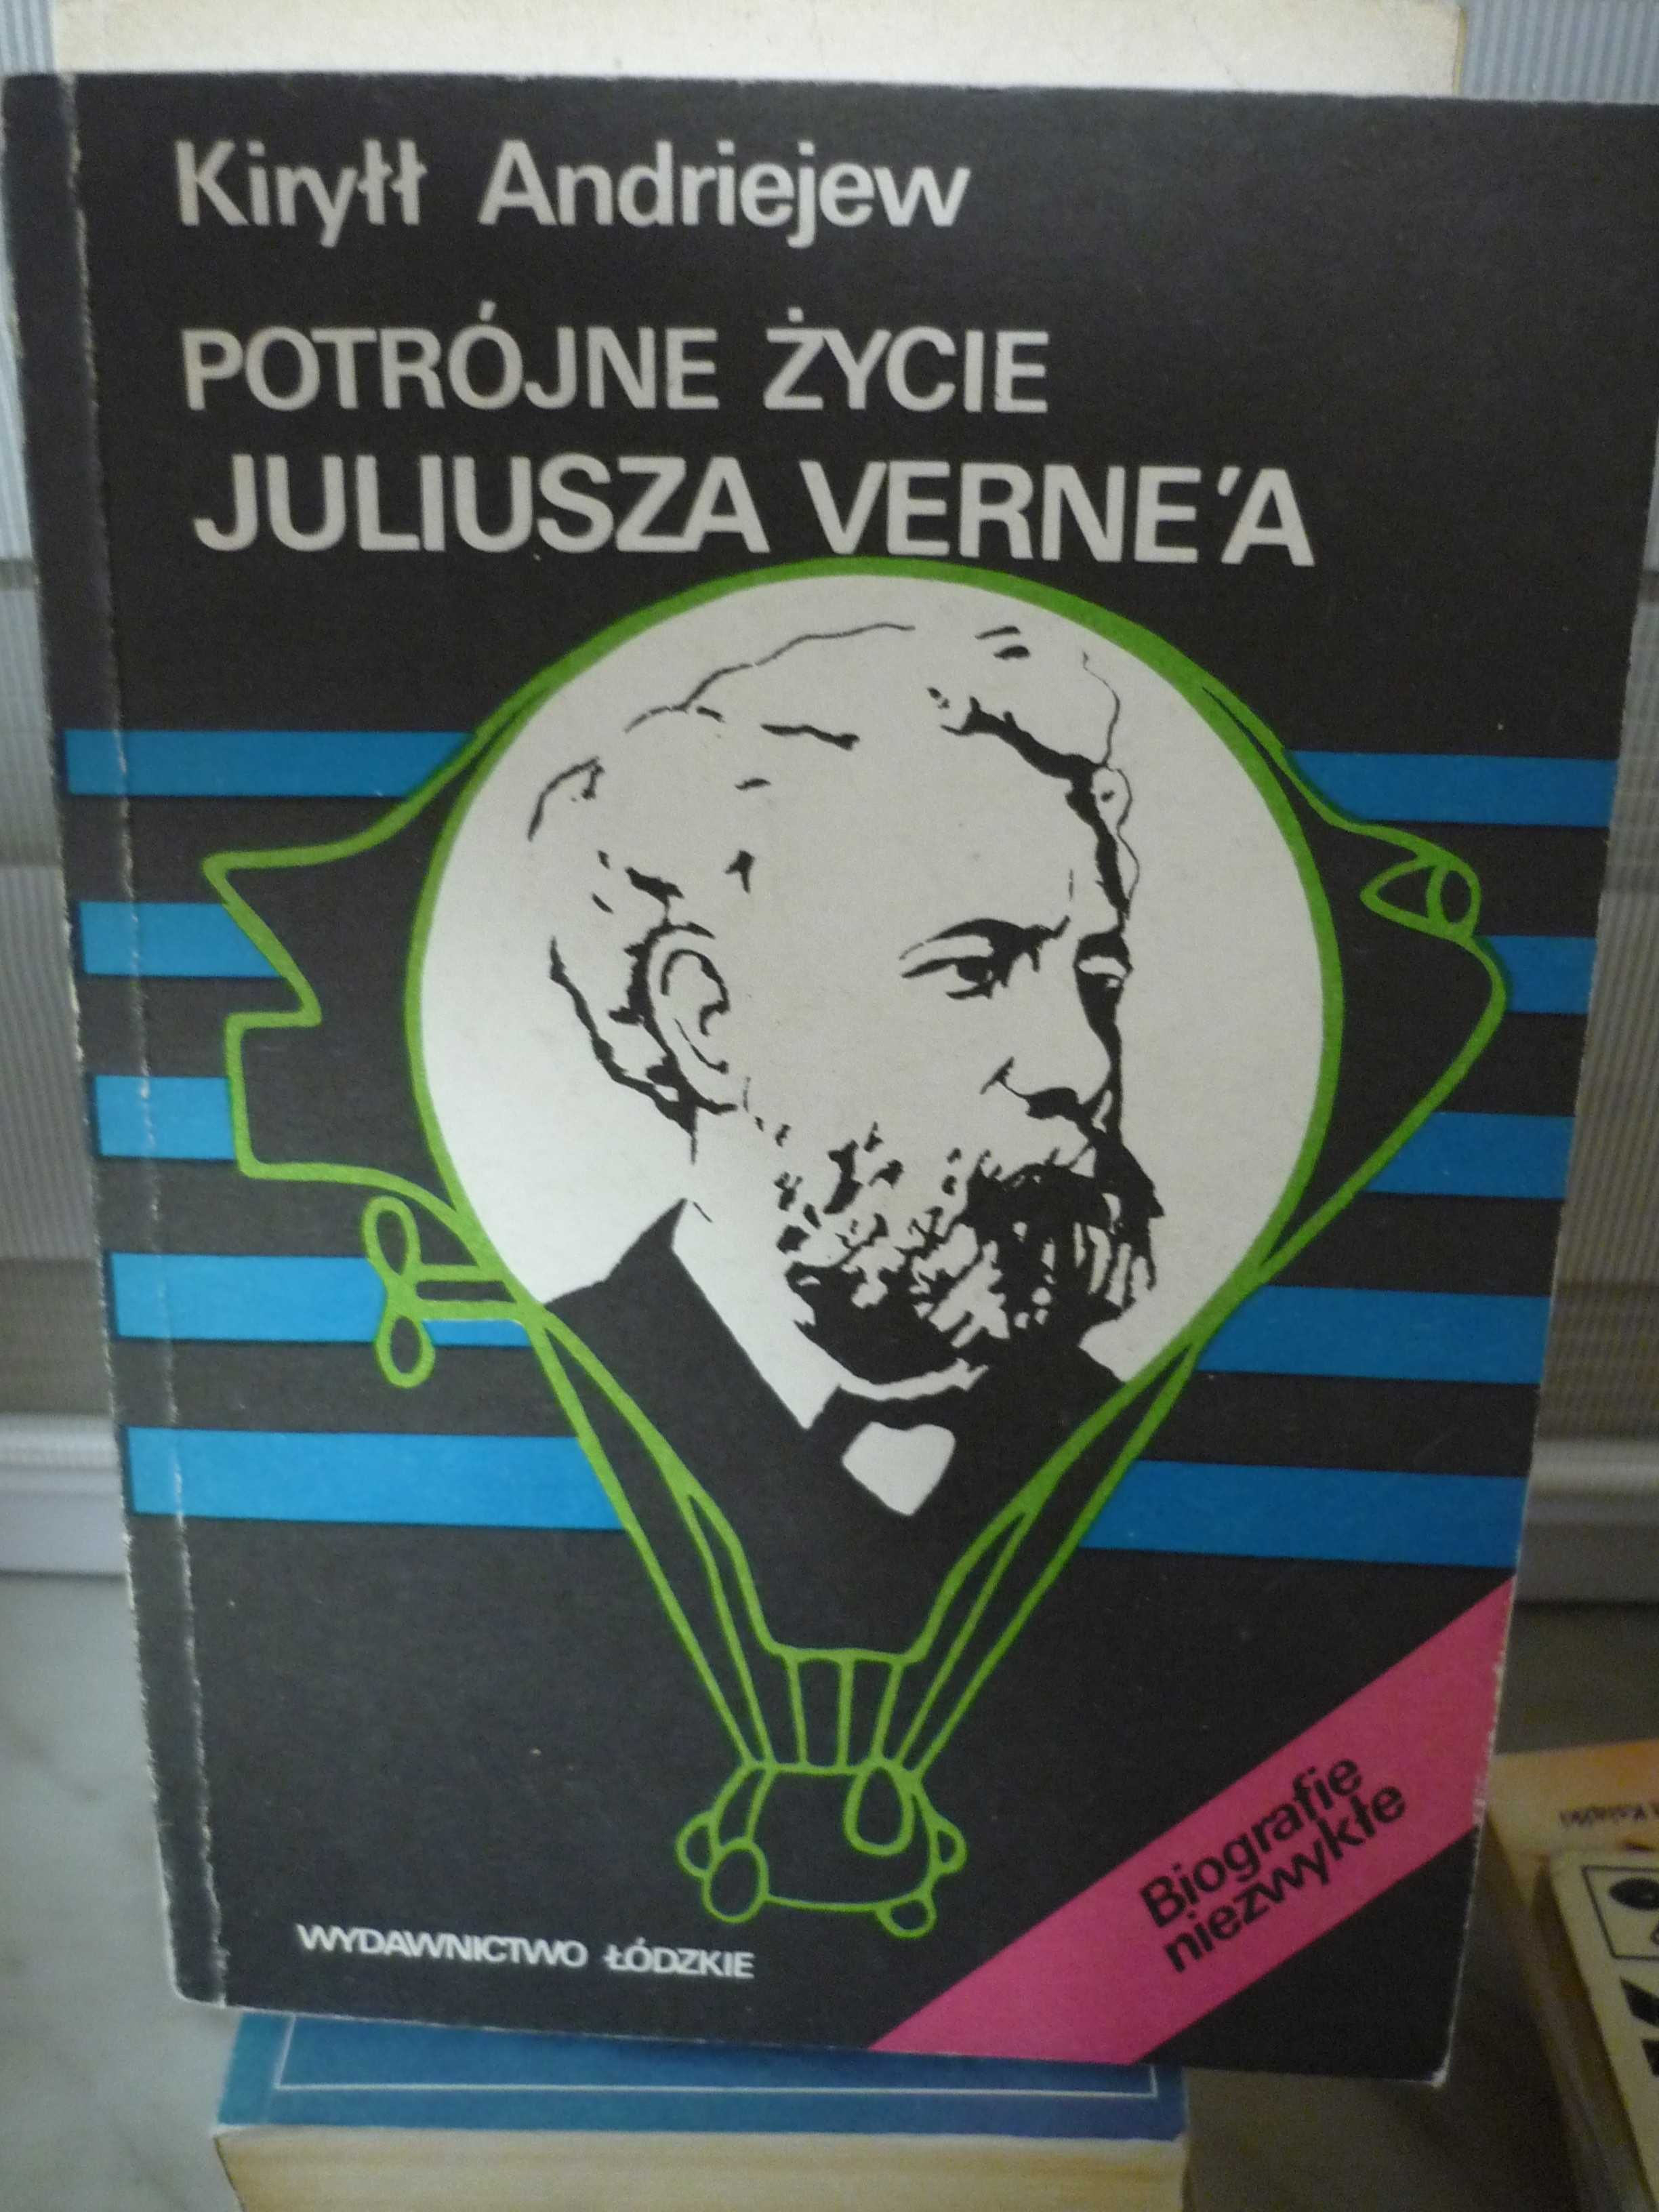 Potrójne życie Juliusza Verne'a , Kiryłł Andriejew.